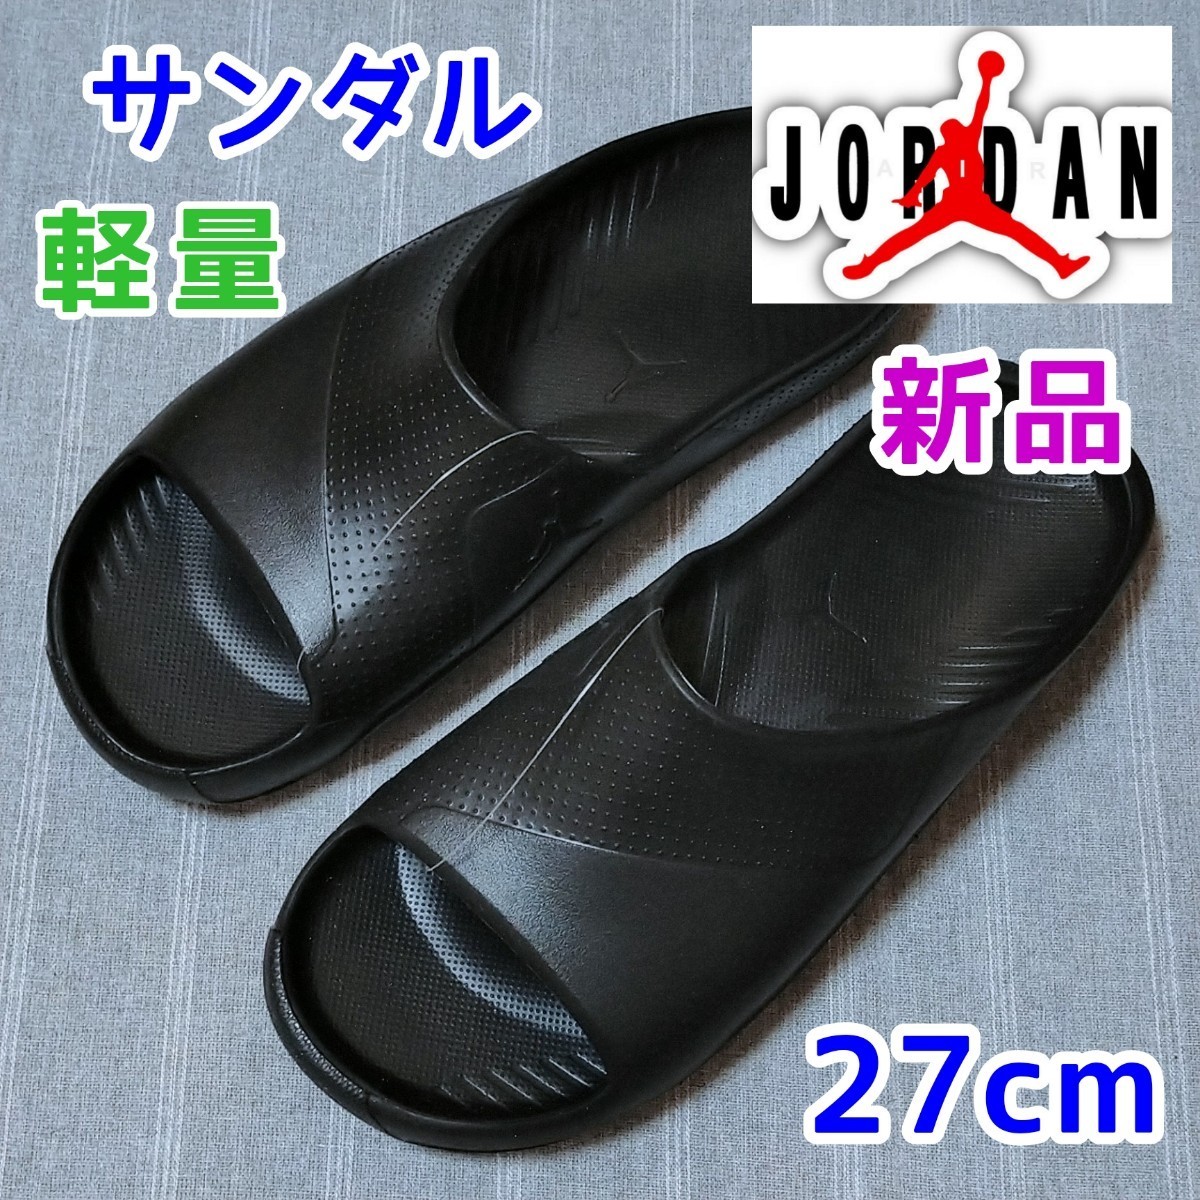  новый товар 27cm* воздушный Jordan шлепанцы для душа скользящий черный чёрный цвет тапочки benasi редкий цвет AIR JORDAN 1 Jump man Logo 